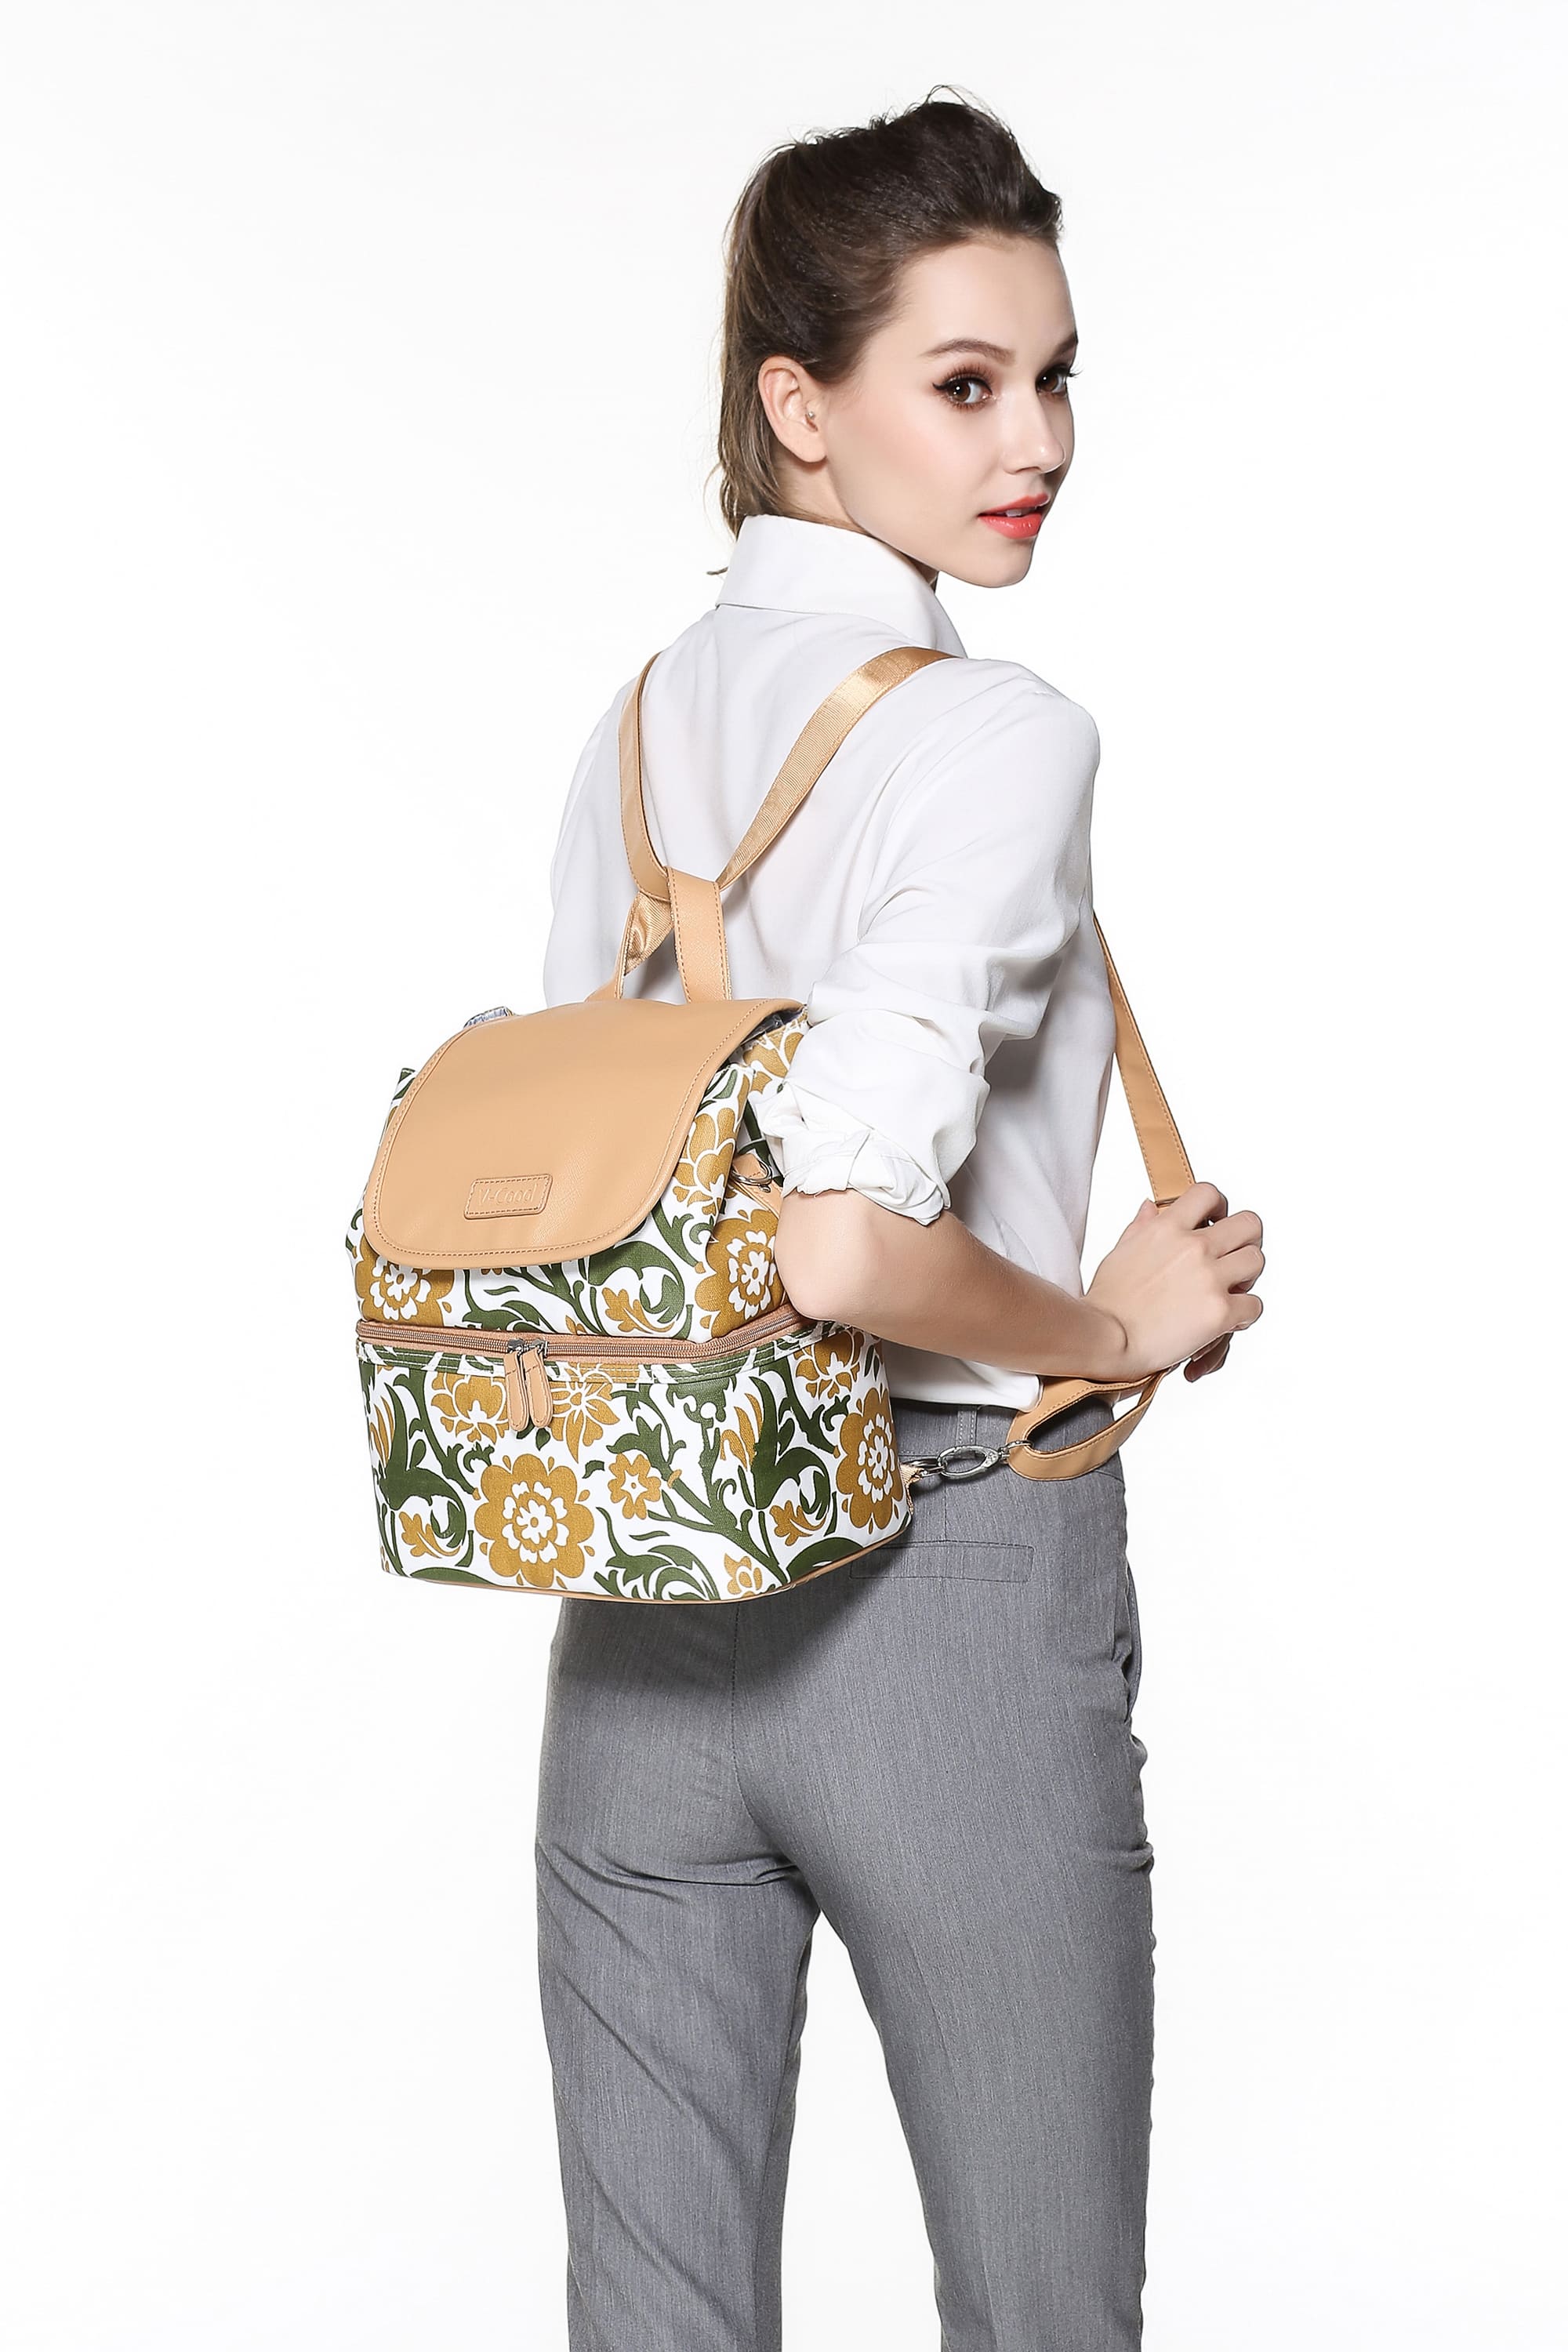 กระเป๋าเก็บความเย็น V-coool รุ่น national style cooler bag กระเป๋าเก็บนมแม่ กระเป๋าใส่ขวดนม กระเป๋าเก็บอุณหภูมิ v-coo